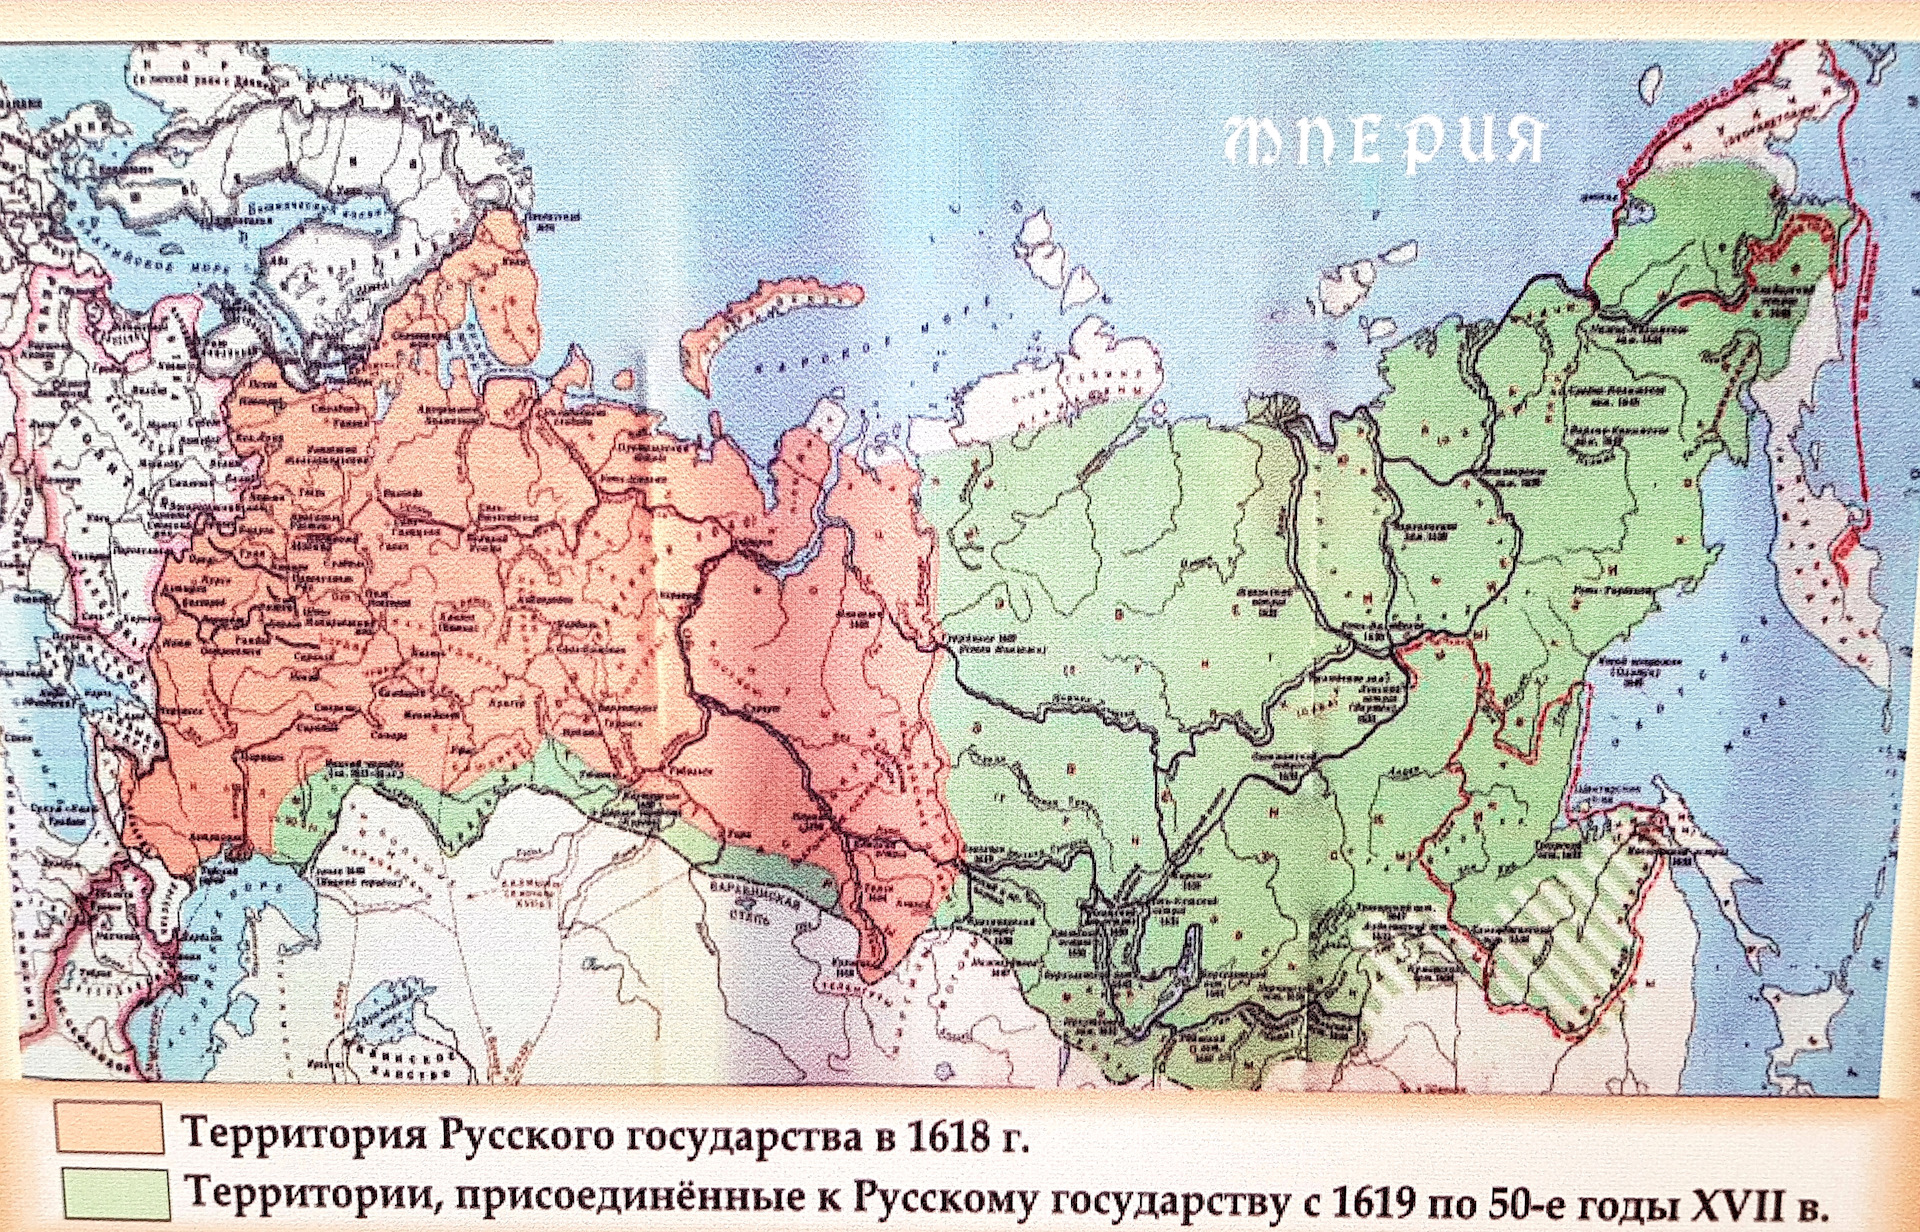 Территория российского государства в 17 веке. Граница российского государства в 1618 году. Территория российского государства в 1618 году. Границы российского государства в 1618. Граница России в 1618 году.